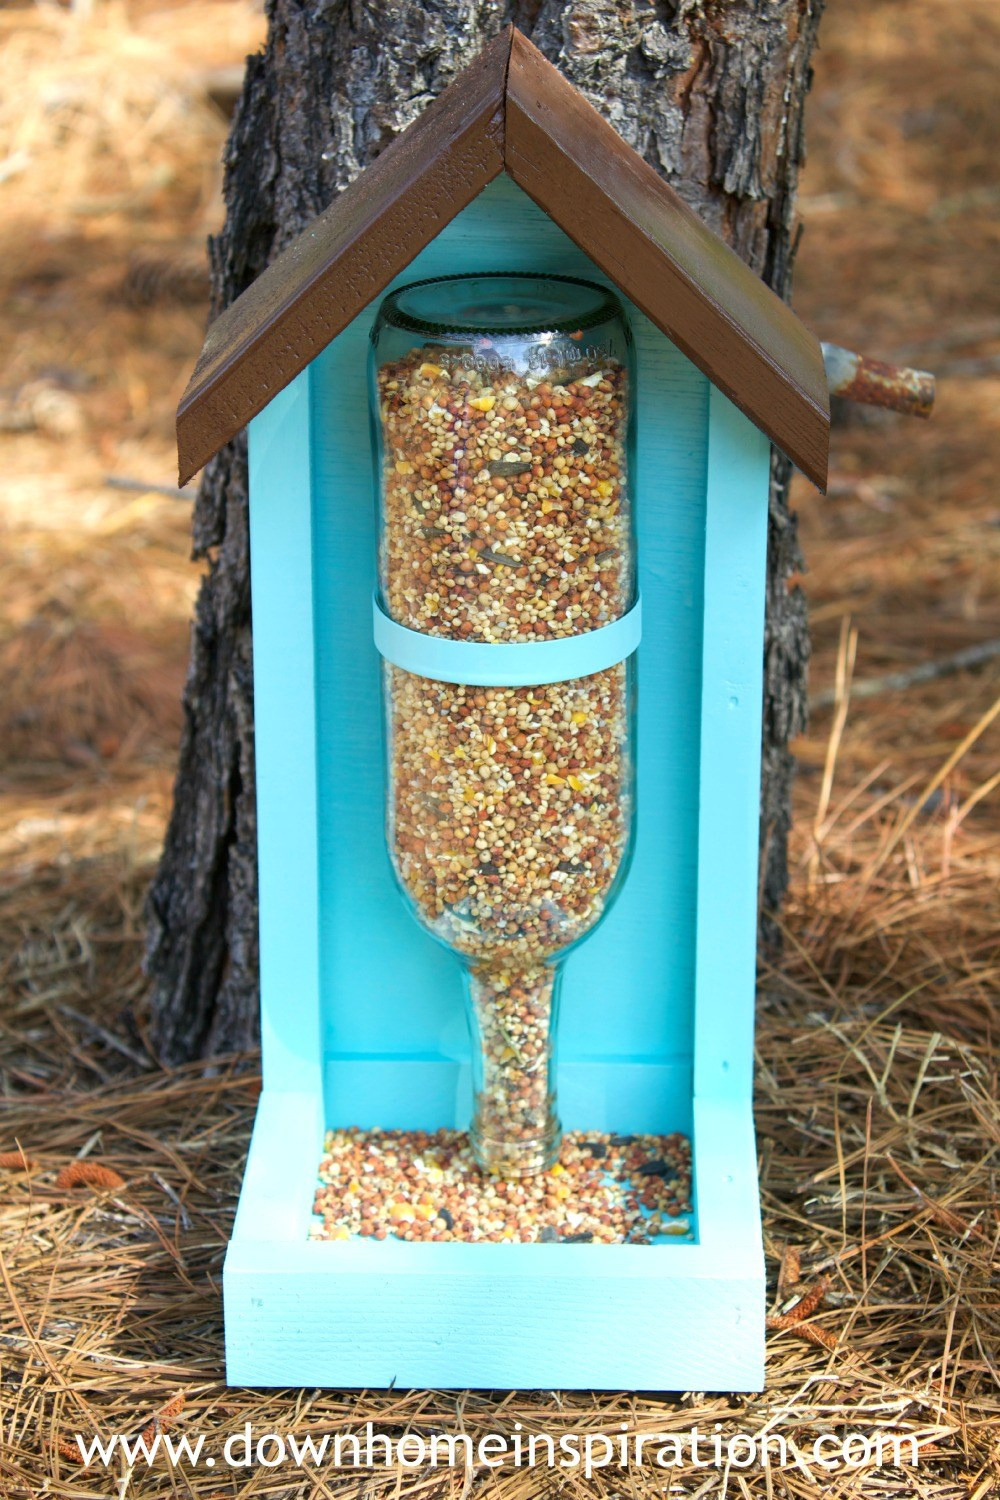 Best ideas about DIY Wine Bottle Bird Feeder
. Save or Pin How to Make a Wine Bottle Bird Feeder Down Home Inspiration Now.